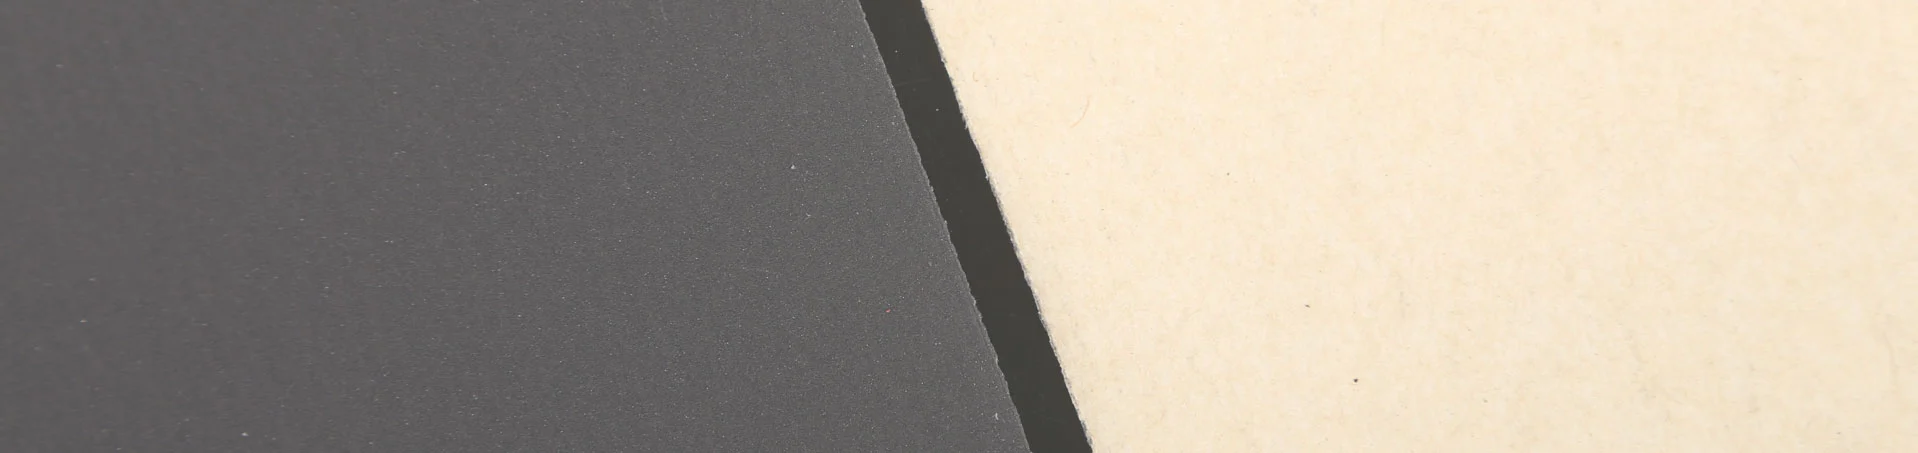 Silicon Carbide Sandpaper Roll